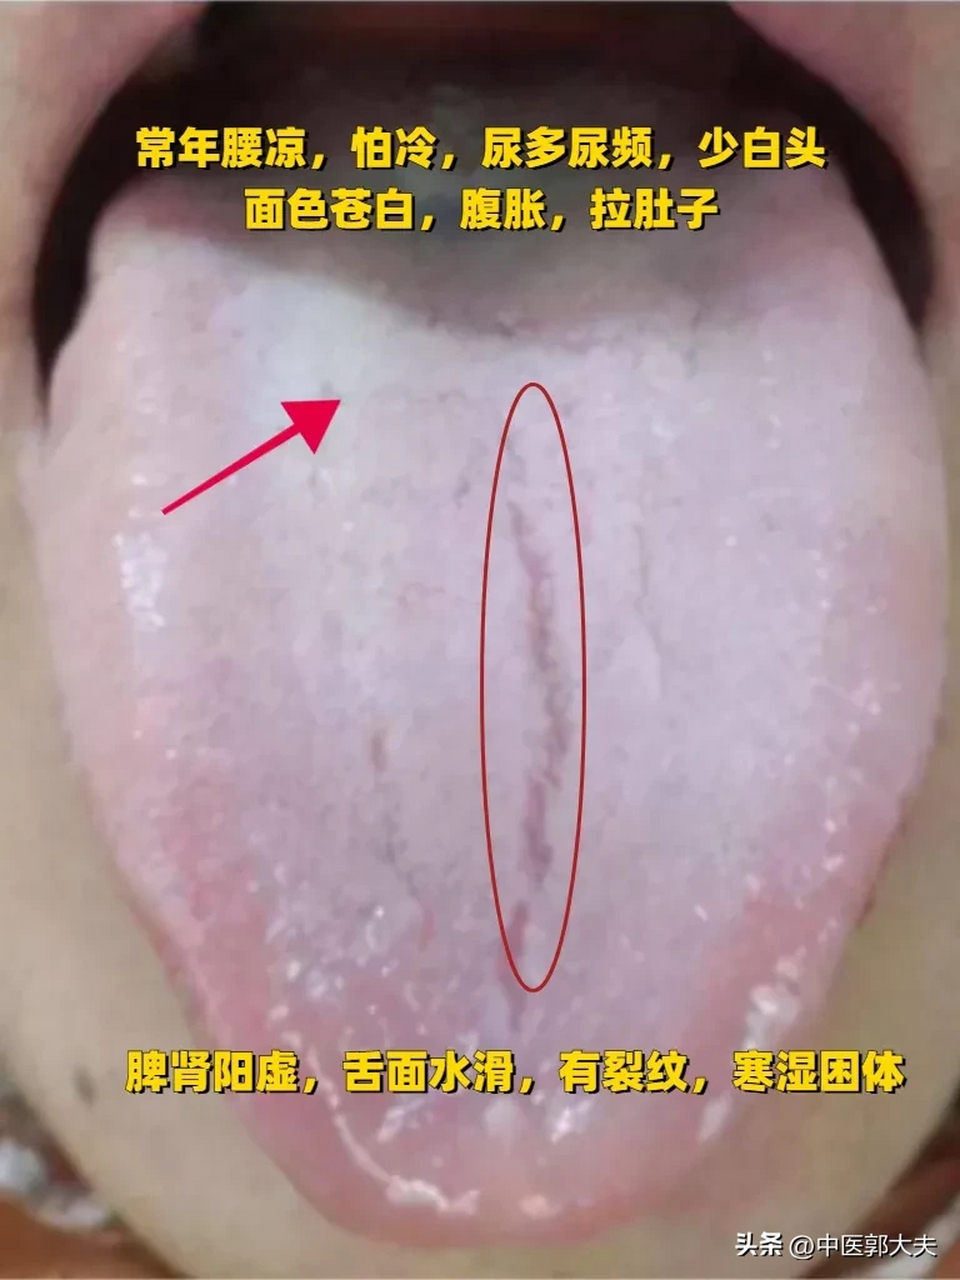 大家可以看到这个舌相,舌头上裂纹,舌苔白腻,舌头表面光滑水润